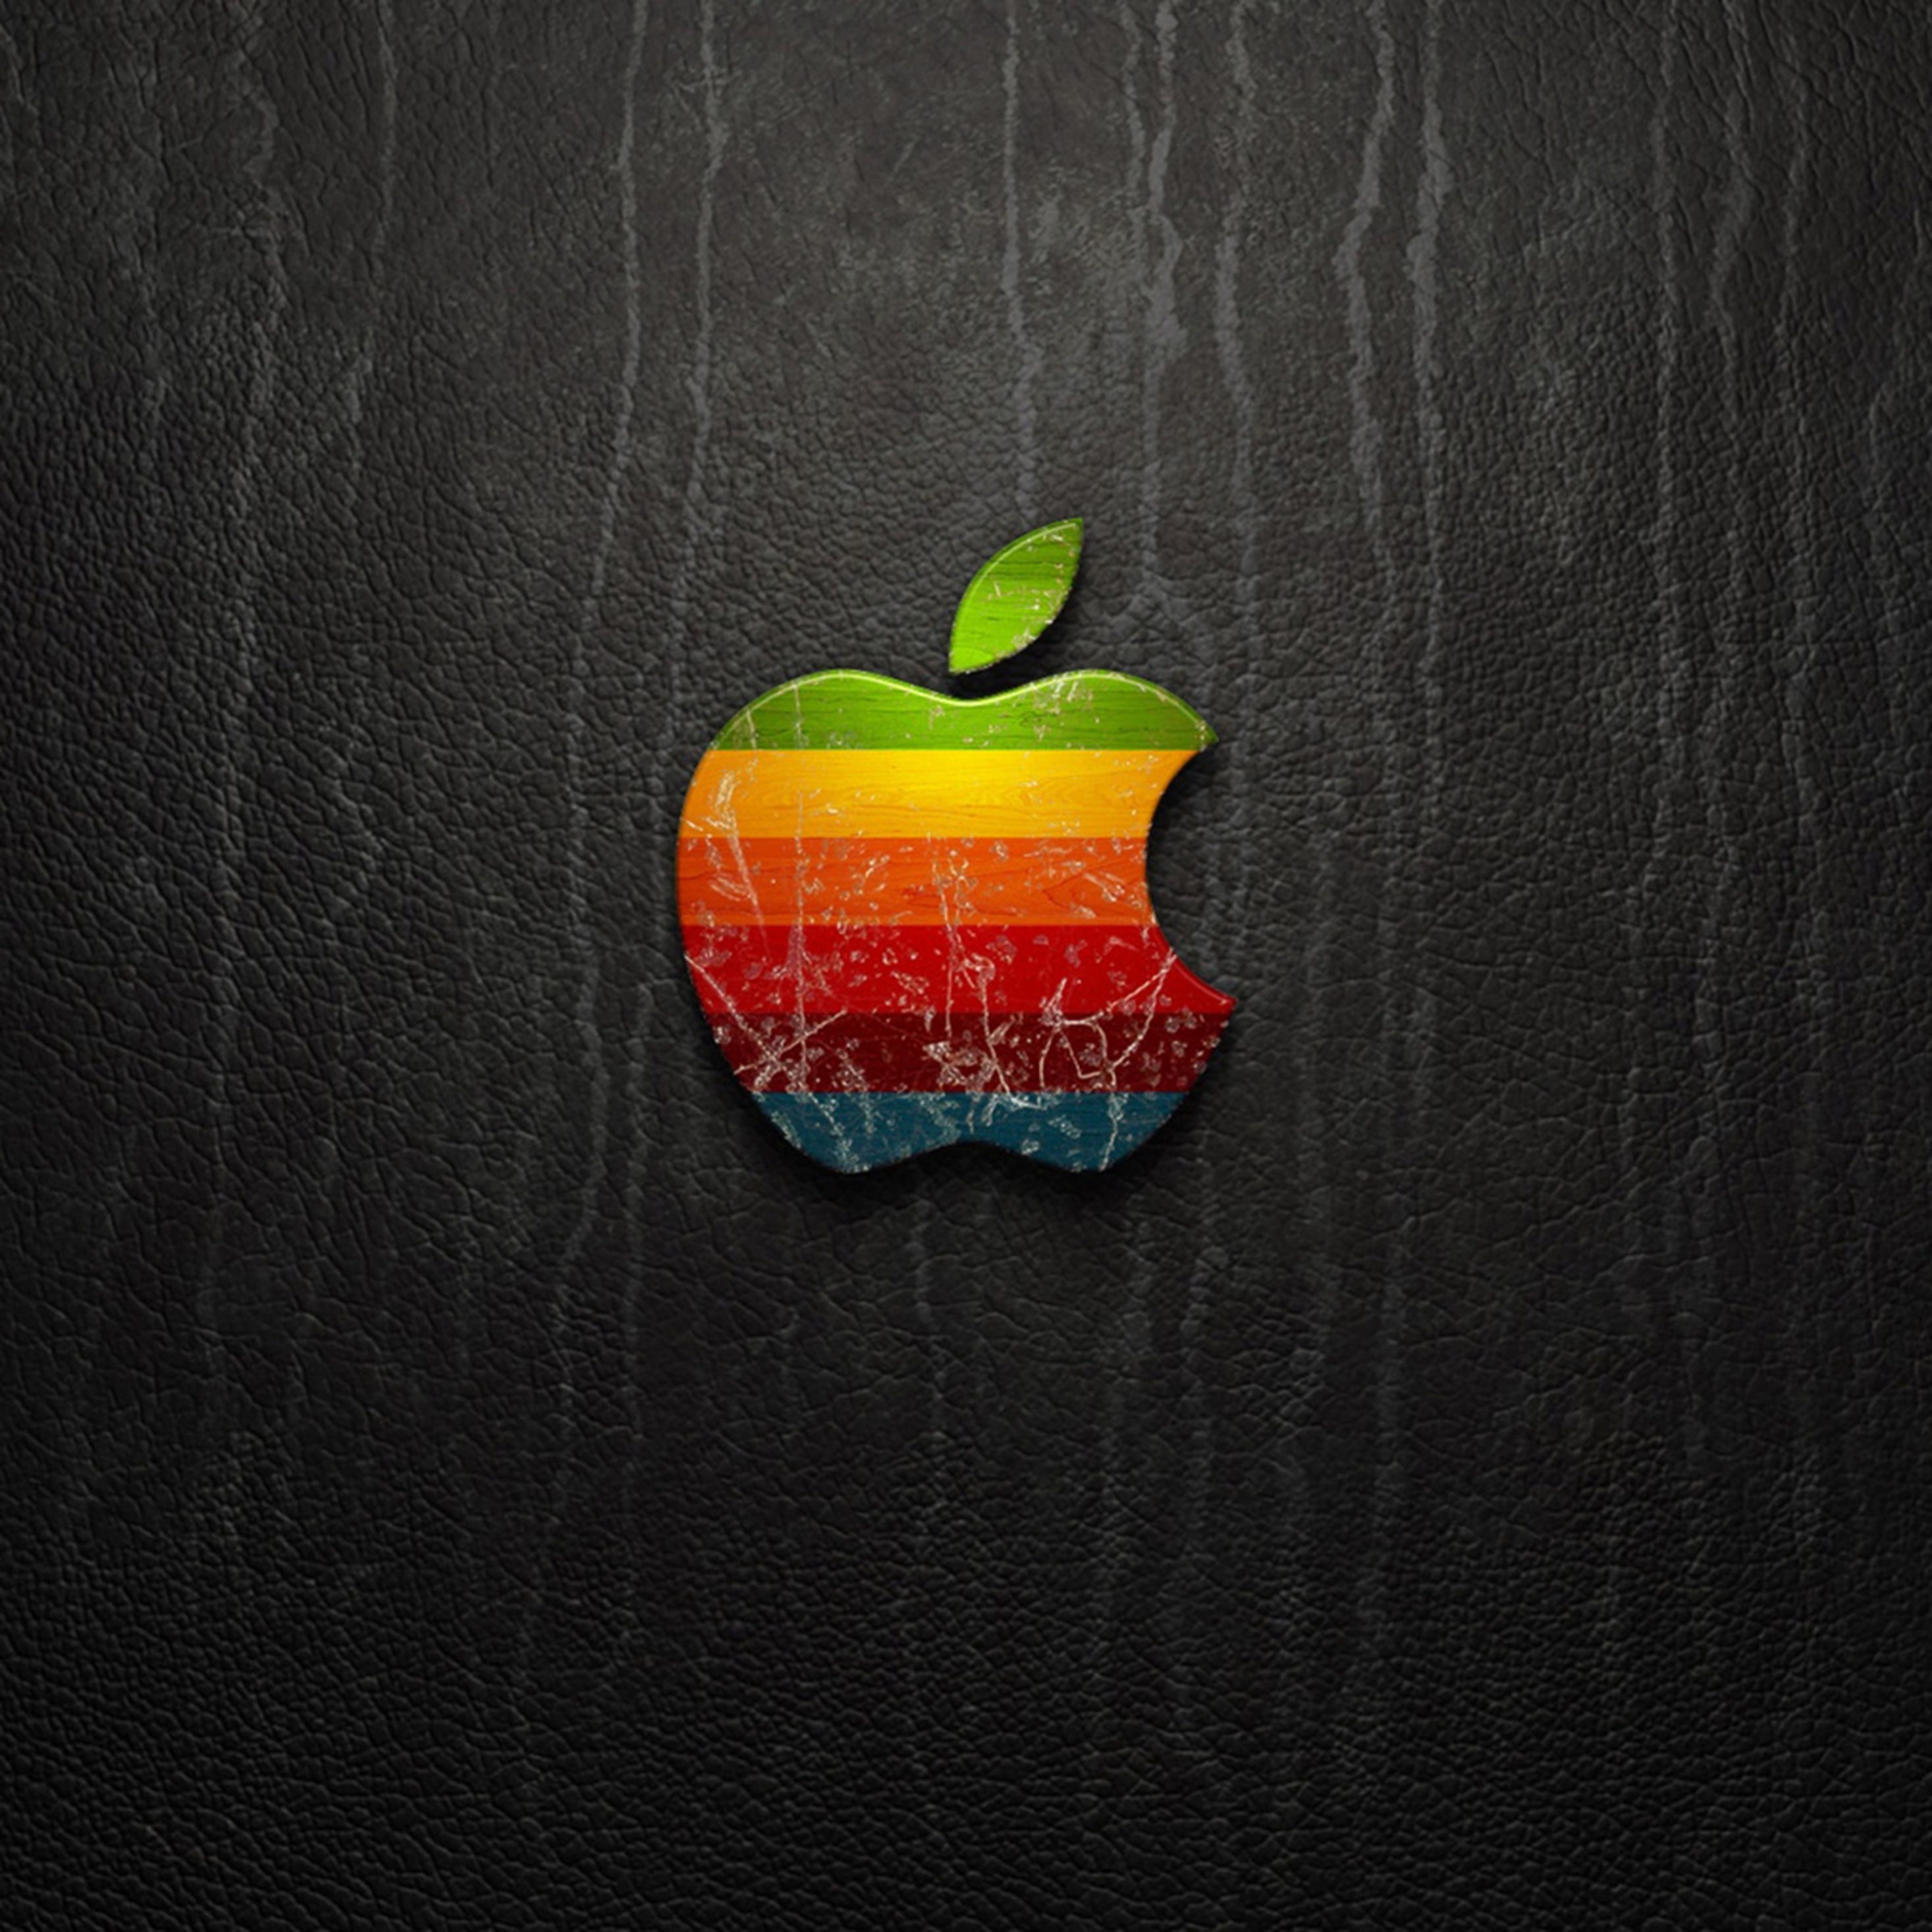 Обои на айфон яблоко. Обои на рабочий стол Apple. Логотип Apple. Интересные обои на айфон. Необычный логотип Apple.